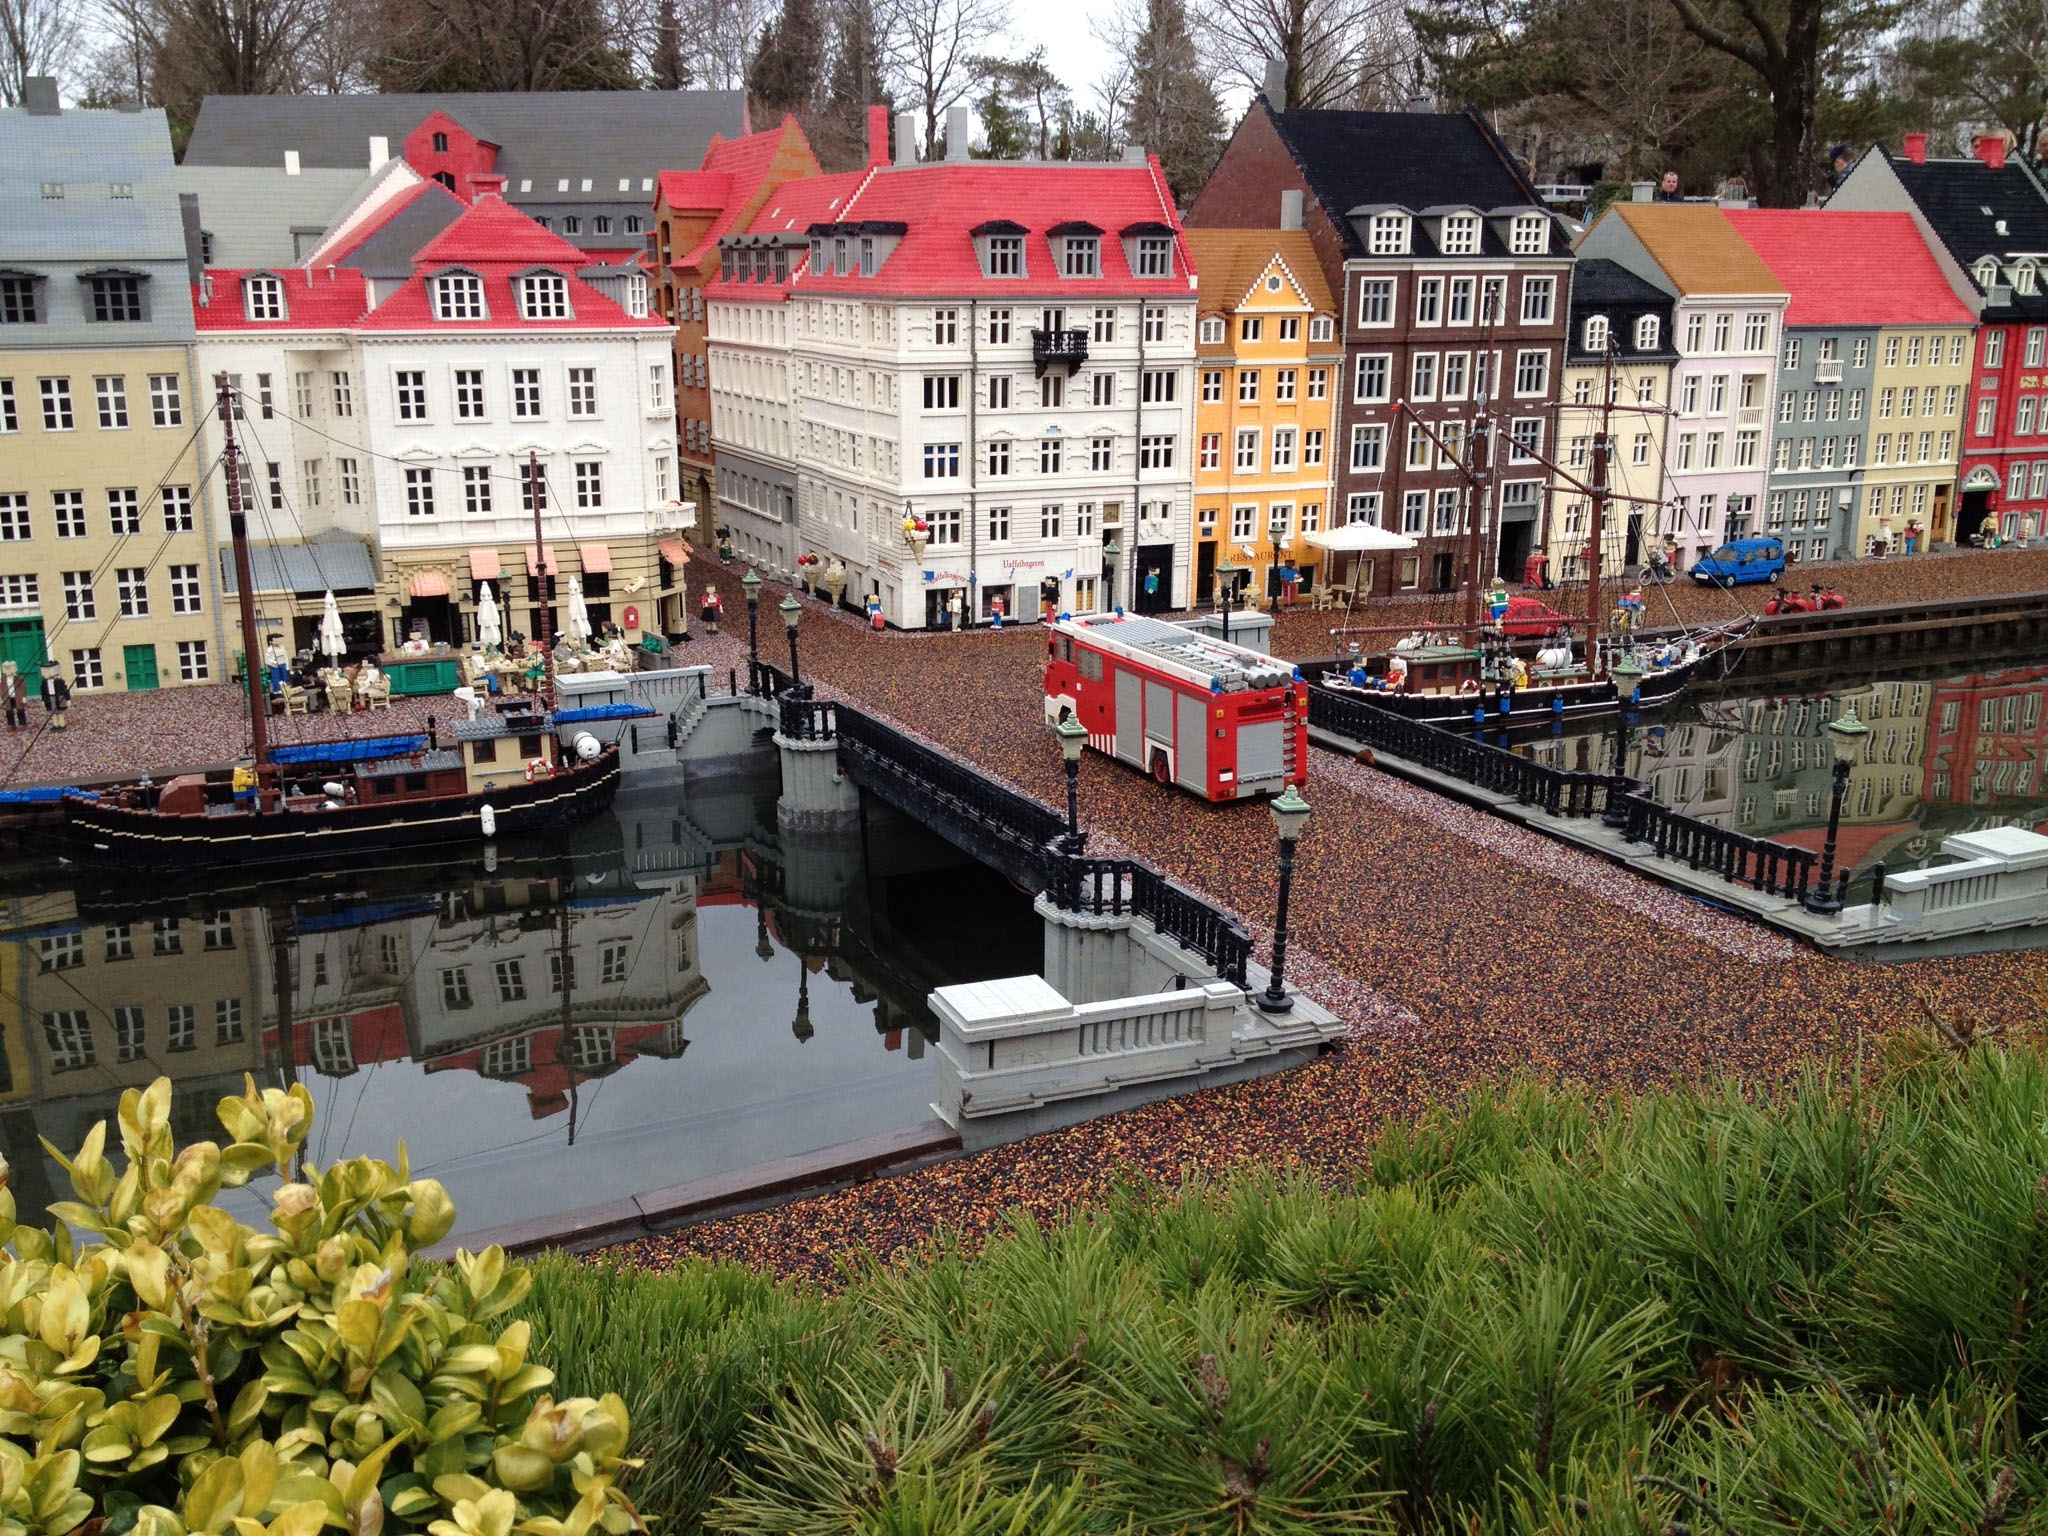 Vakantie naar Legoland Billund Denemarken2